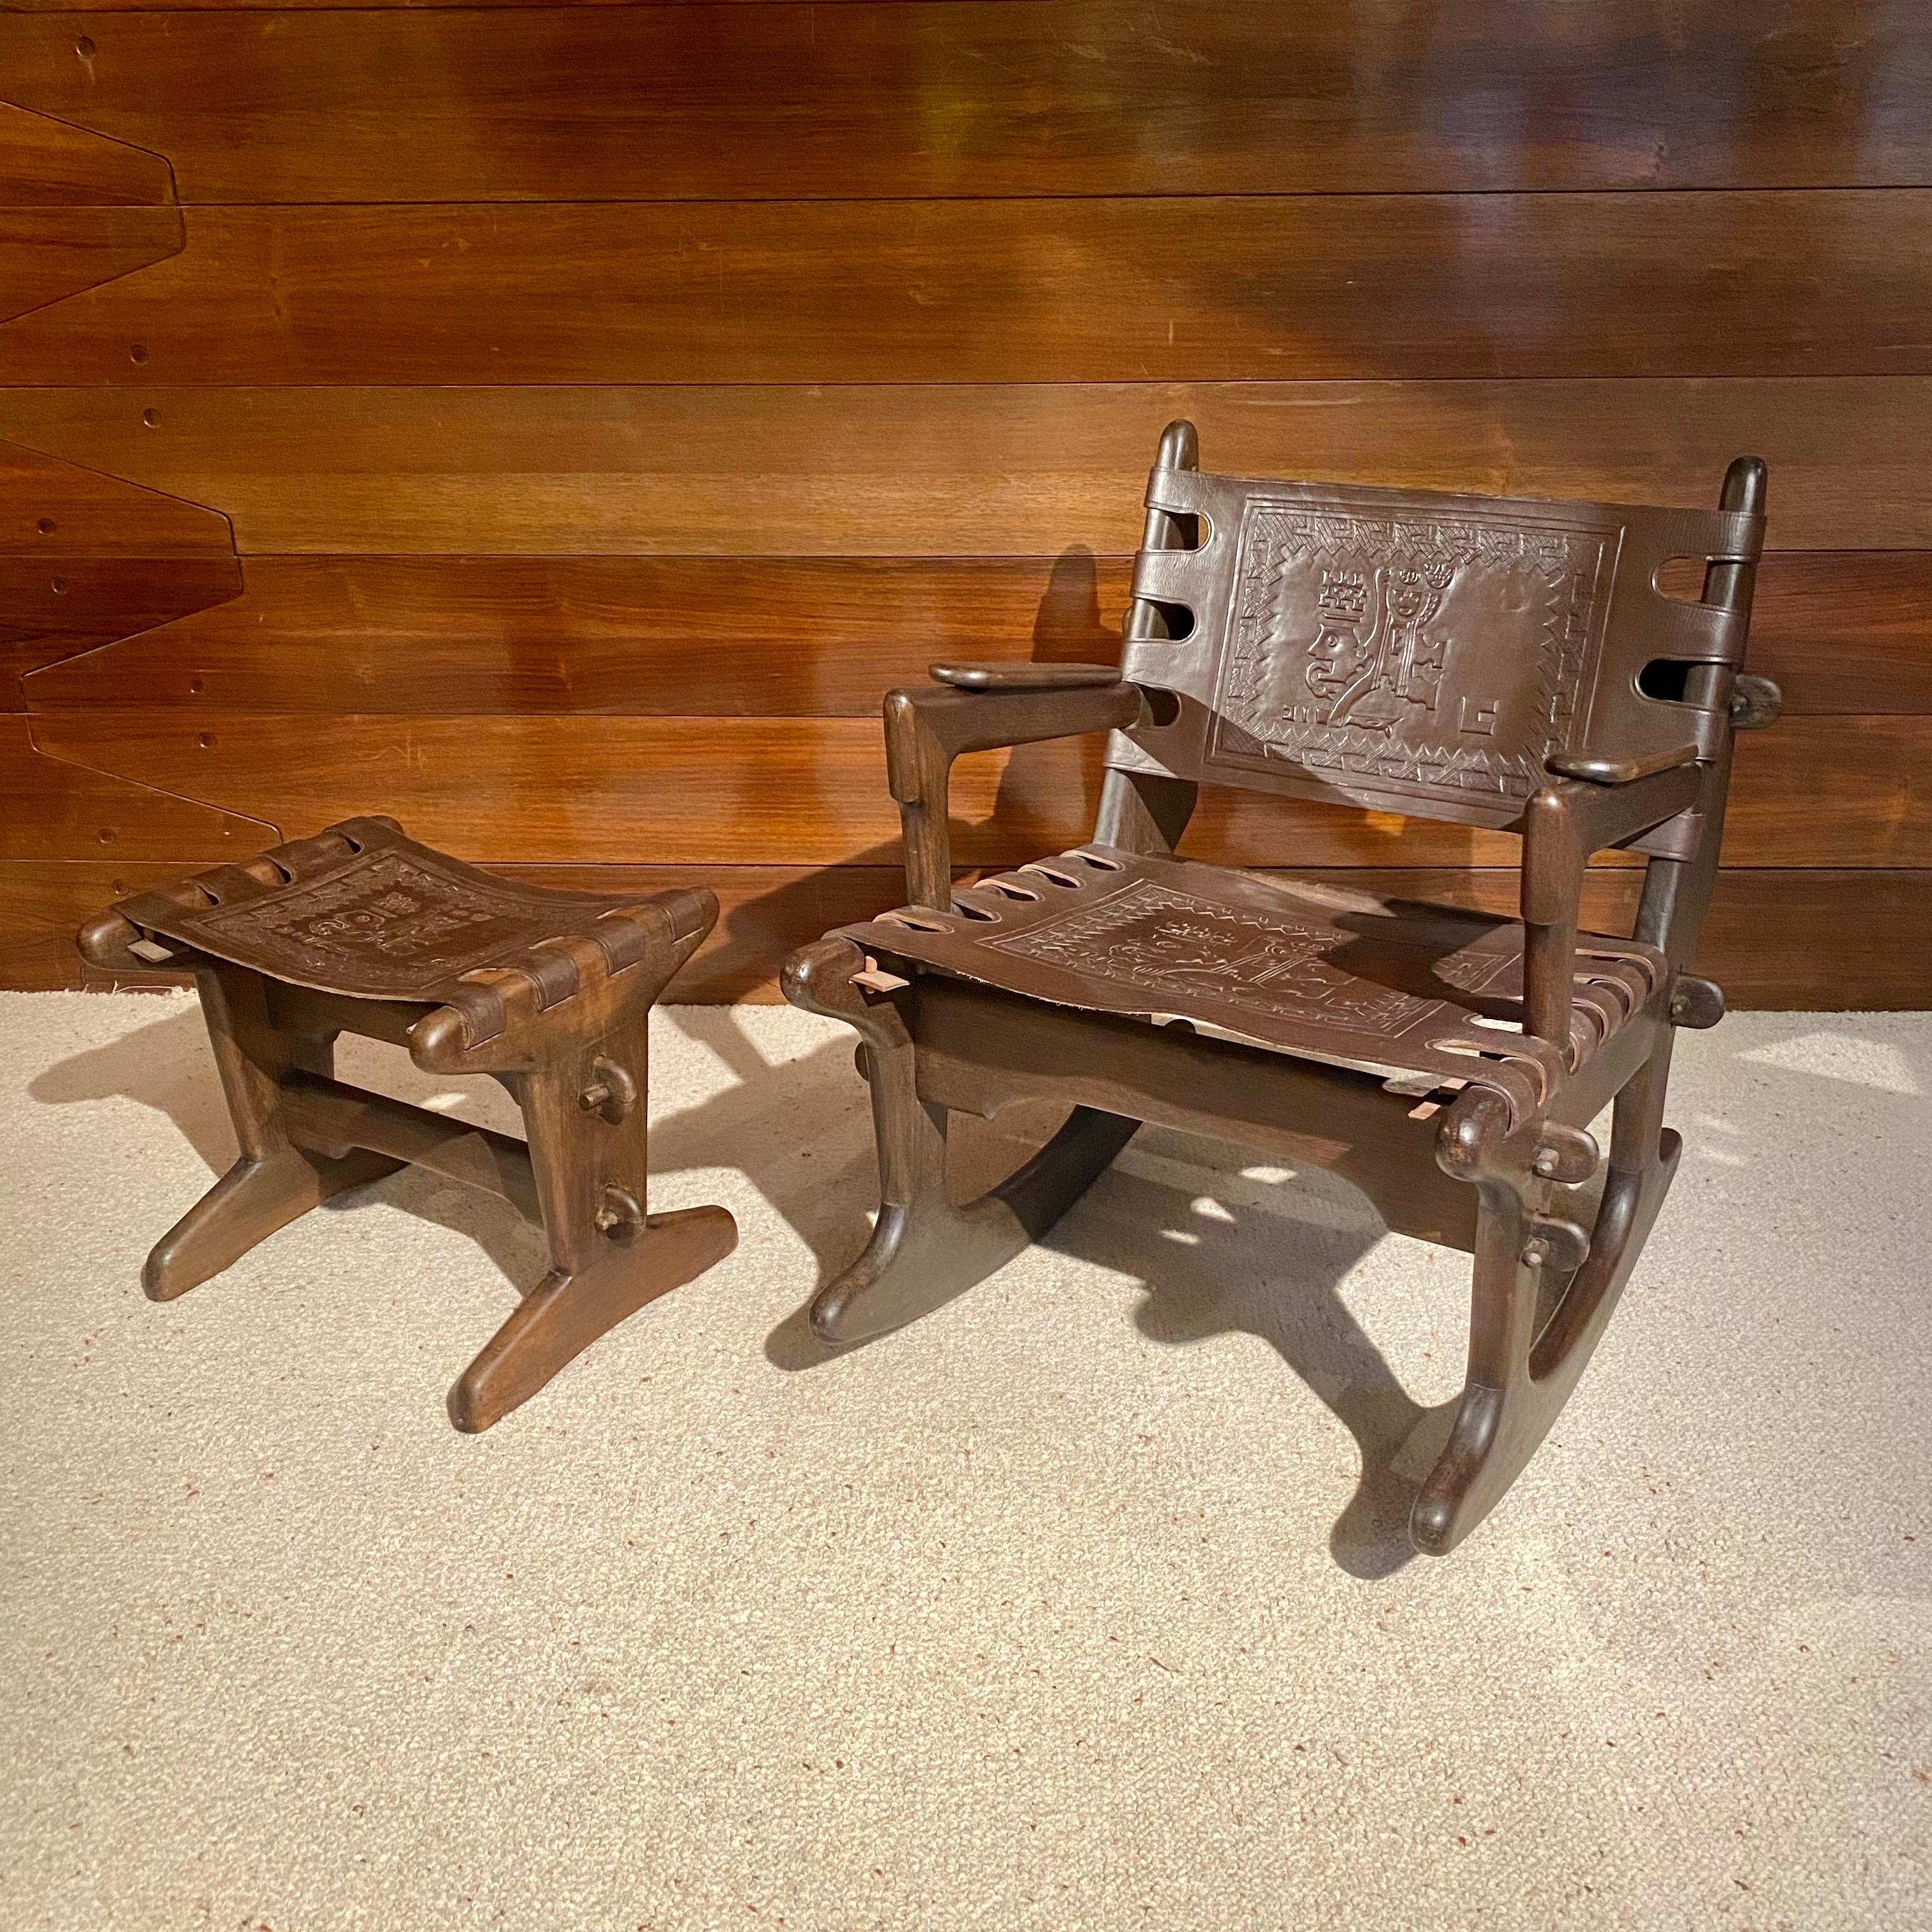 Schaukelstuhl und Fußstütze aus Holz und Leder von Angel Pazmino für Meubles De Estilo Ecuador, 1970er Jahre.
Diese Stücke verfügen über einen hölzernen Zapfenrahmen mit dickem geformten Sling-Leder.
Schaukelstuhl 75cm×60cm×80cm Sitzhöhe